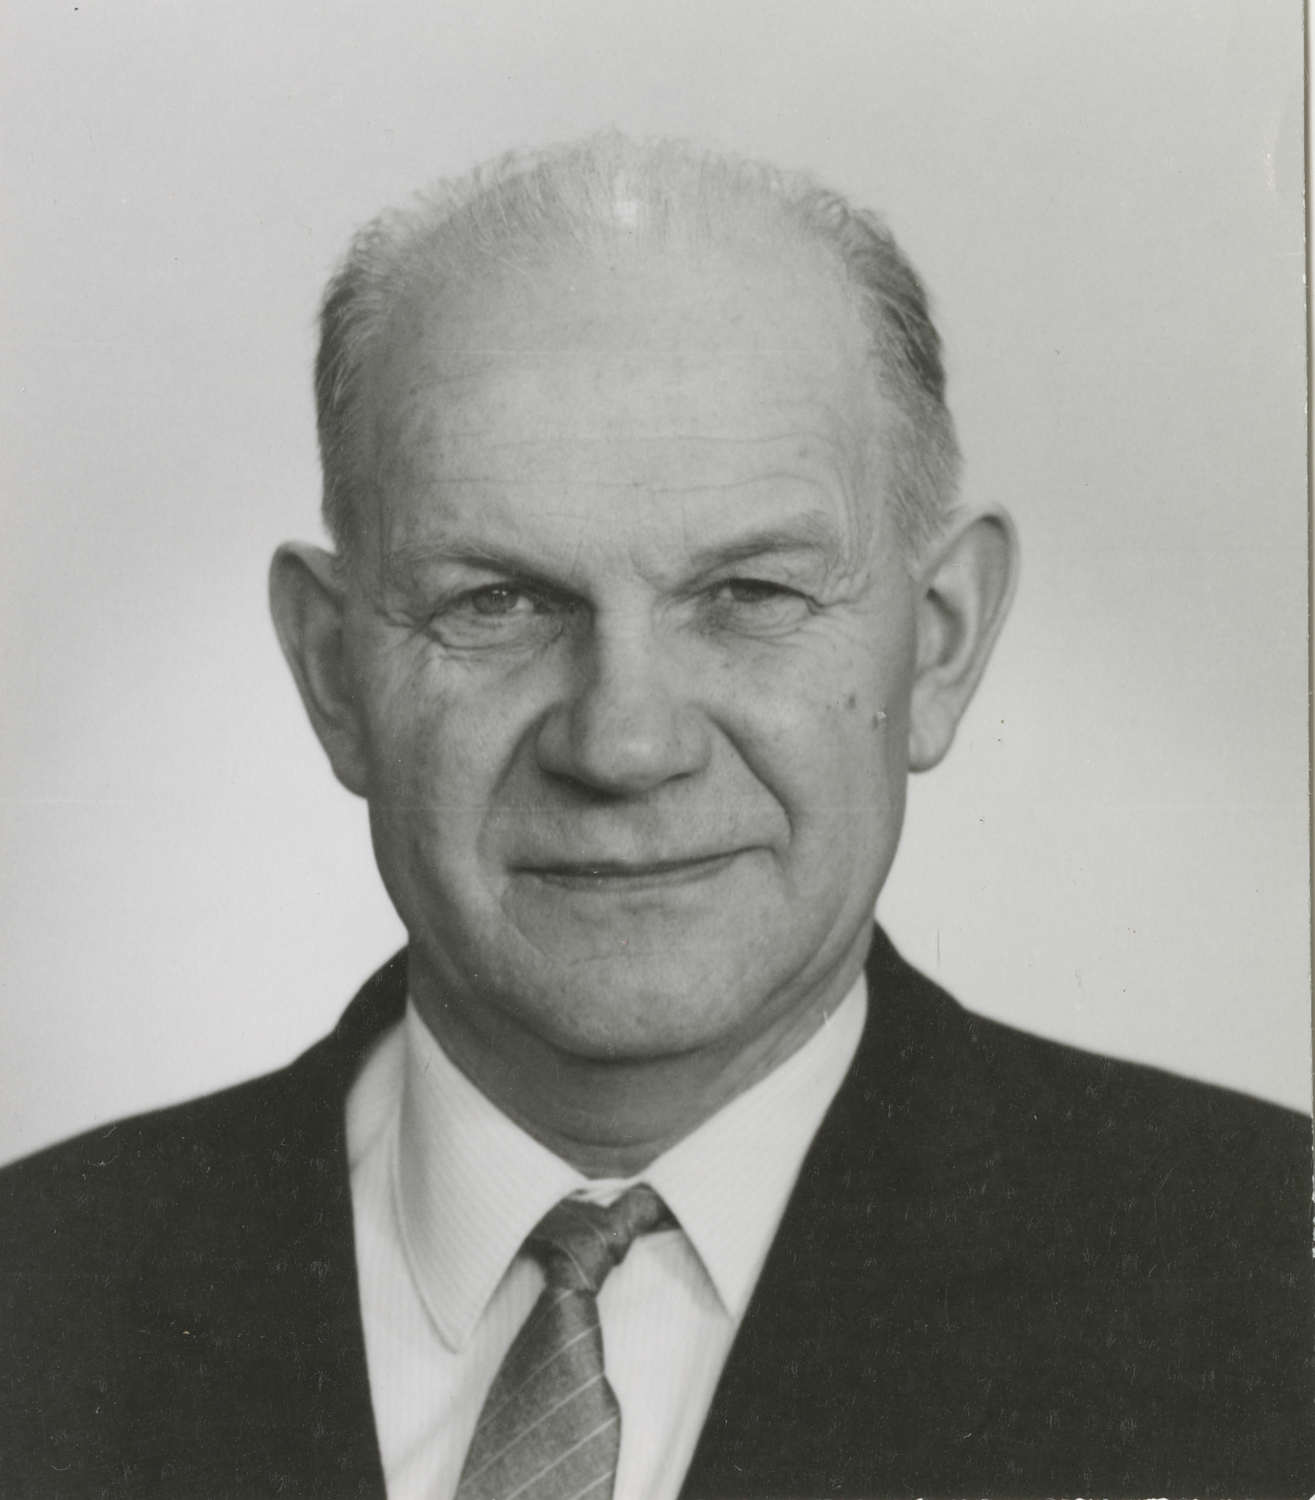 Passfoto på Erik Wester (1912-1982) i 60-års ål...